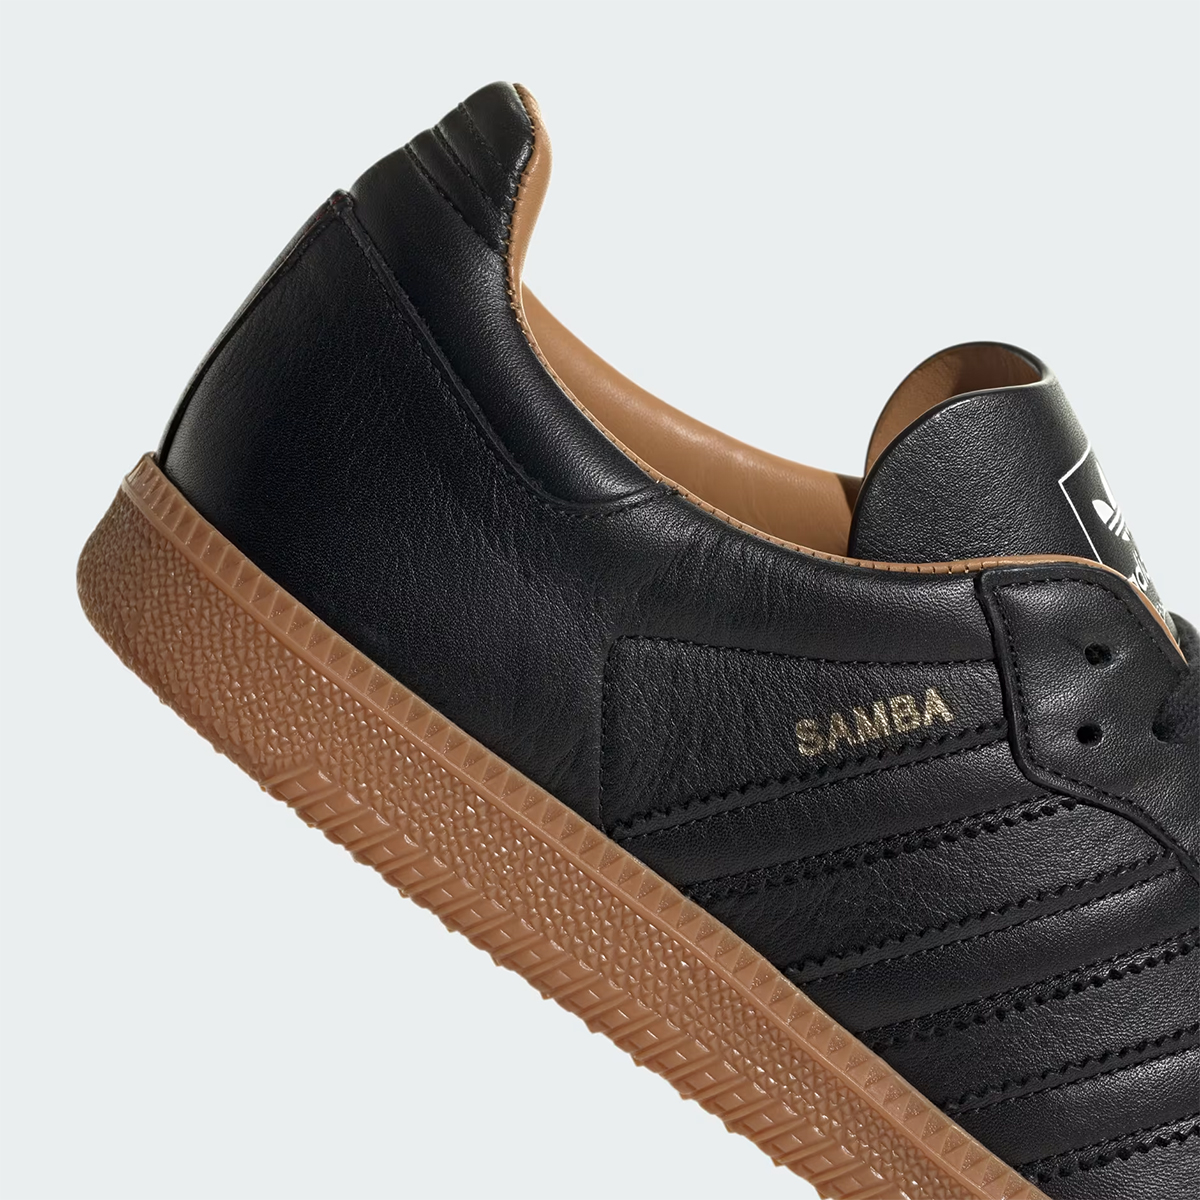 Adidas Samba Made In Italy Id2864 9